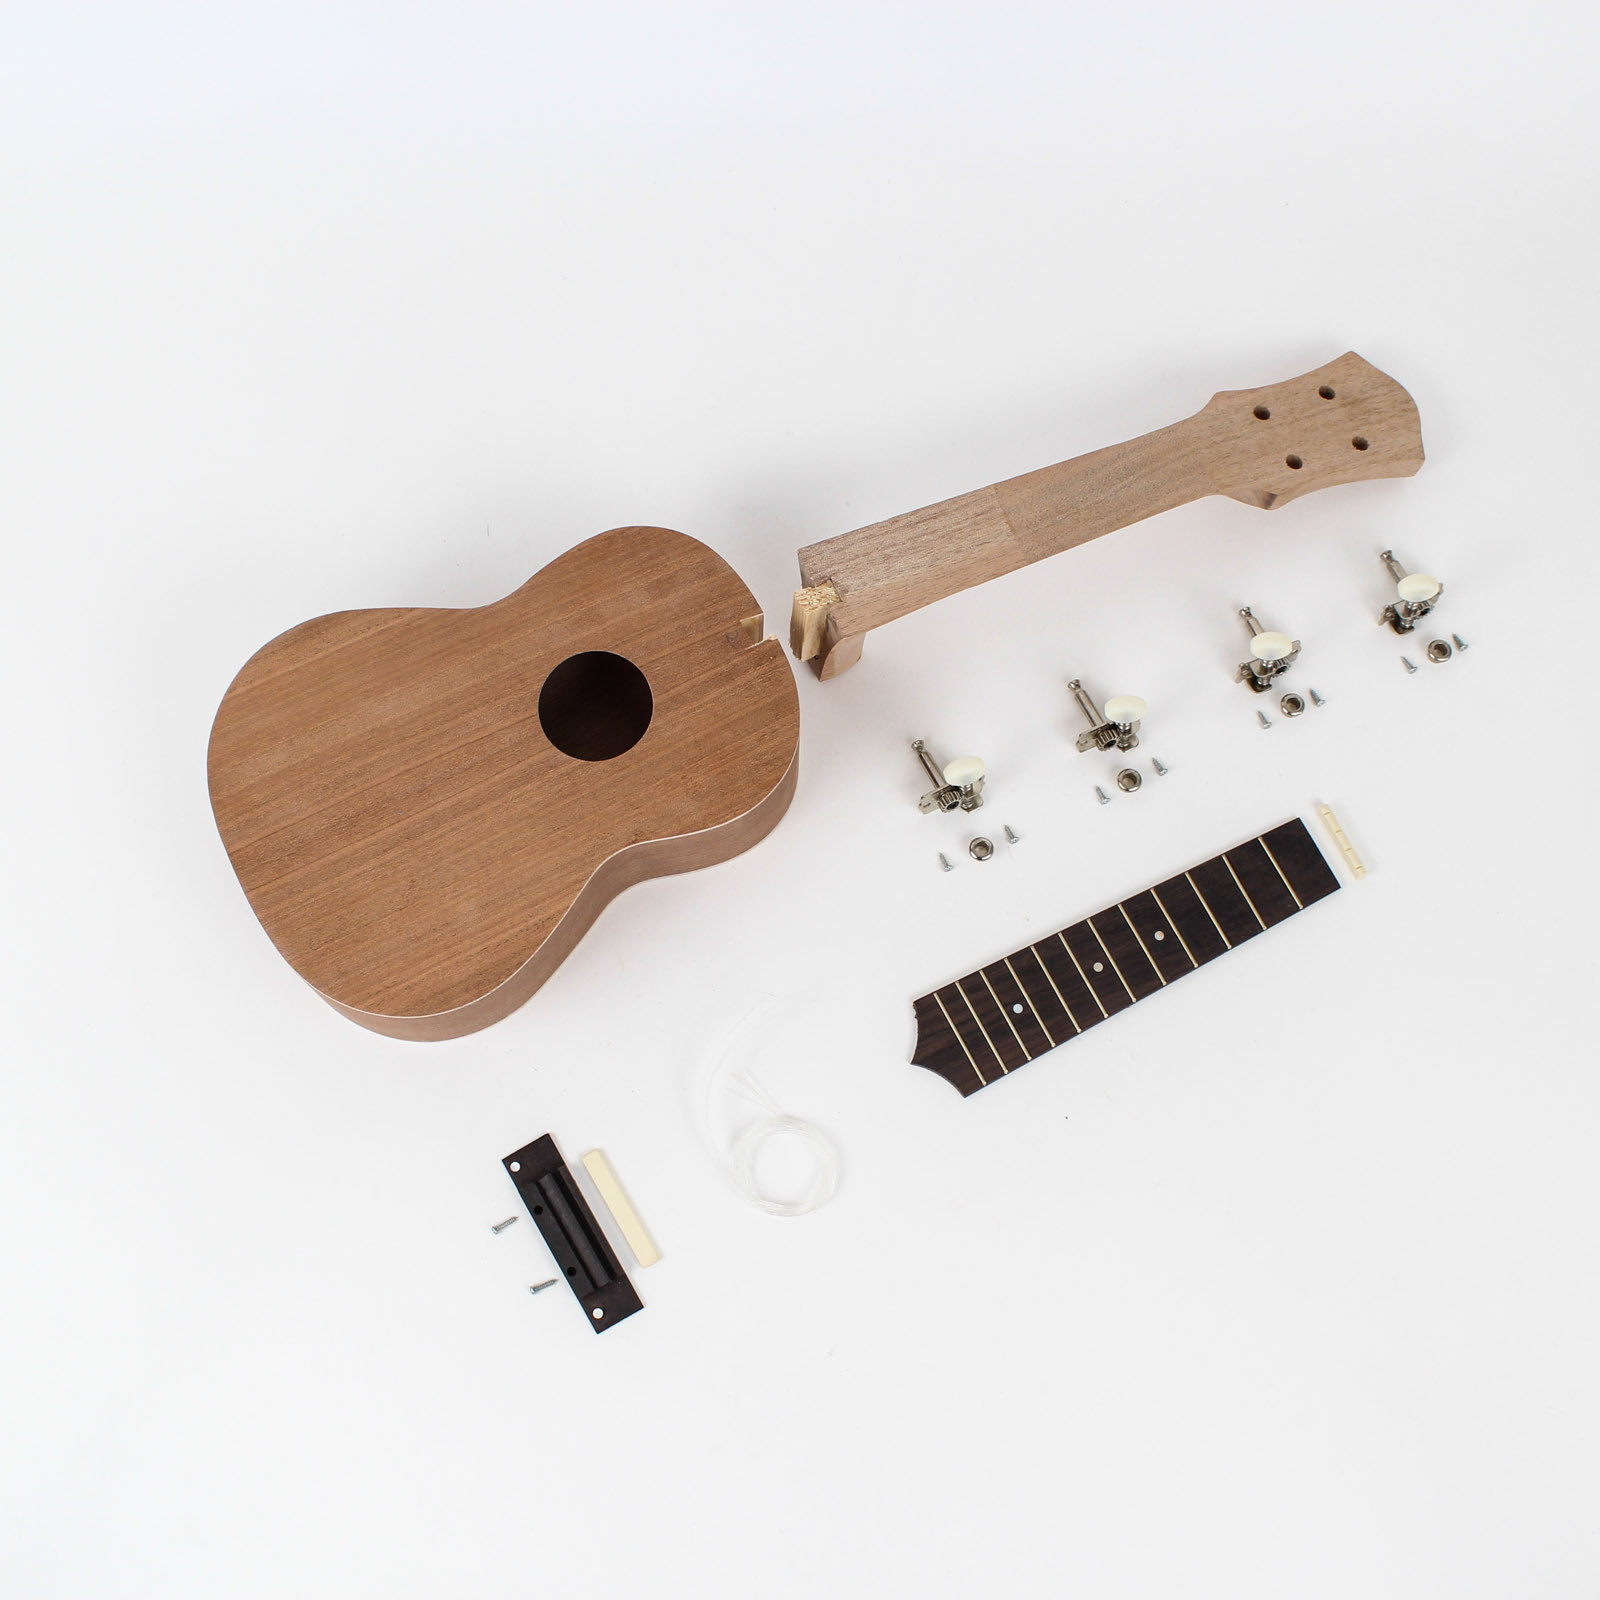 Best ideas about DIY Ukulele Kit
. Save or Pin Ukulele Kit Mahogany Body DIY Guitars Now.